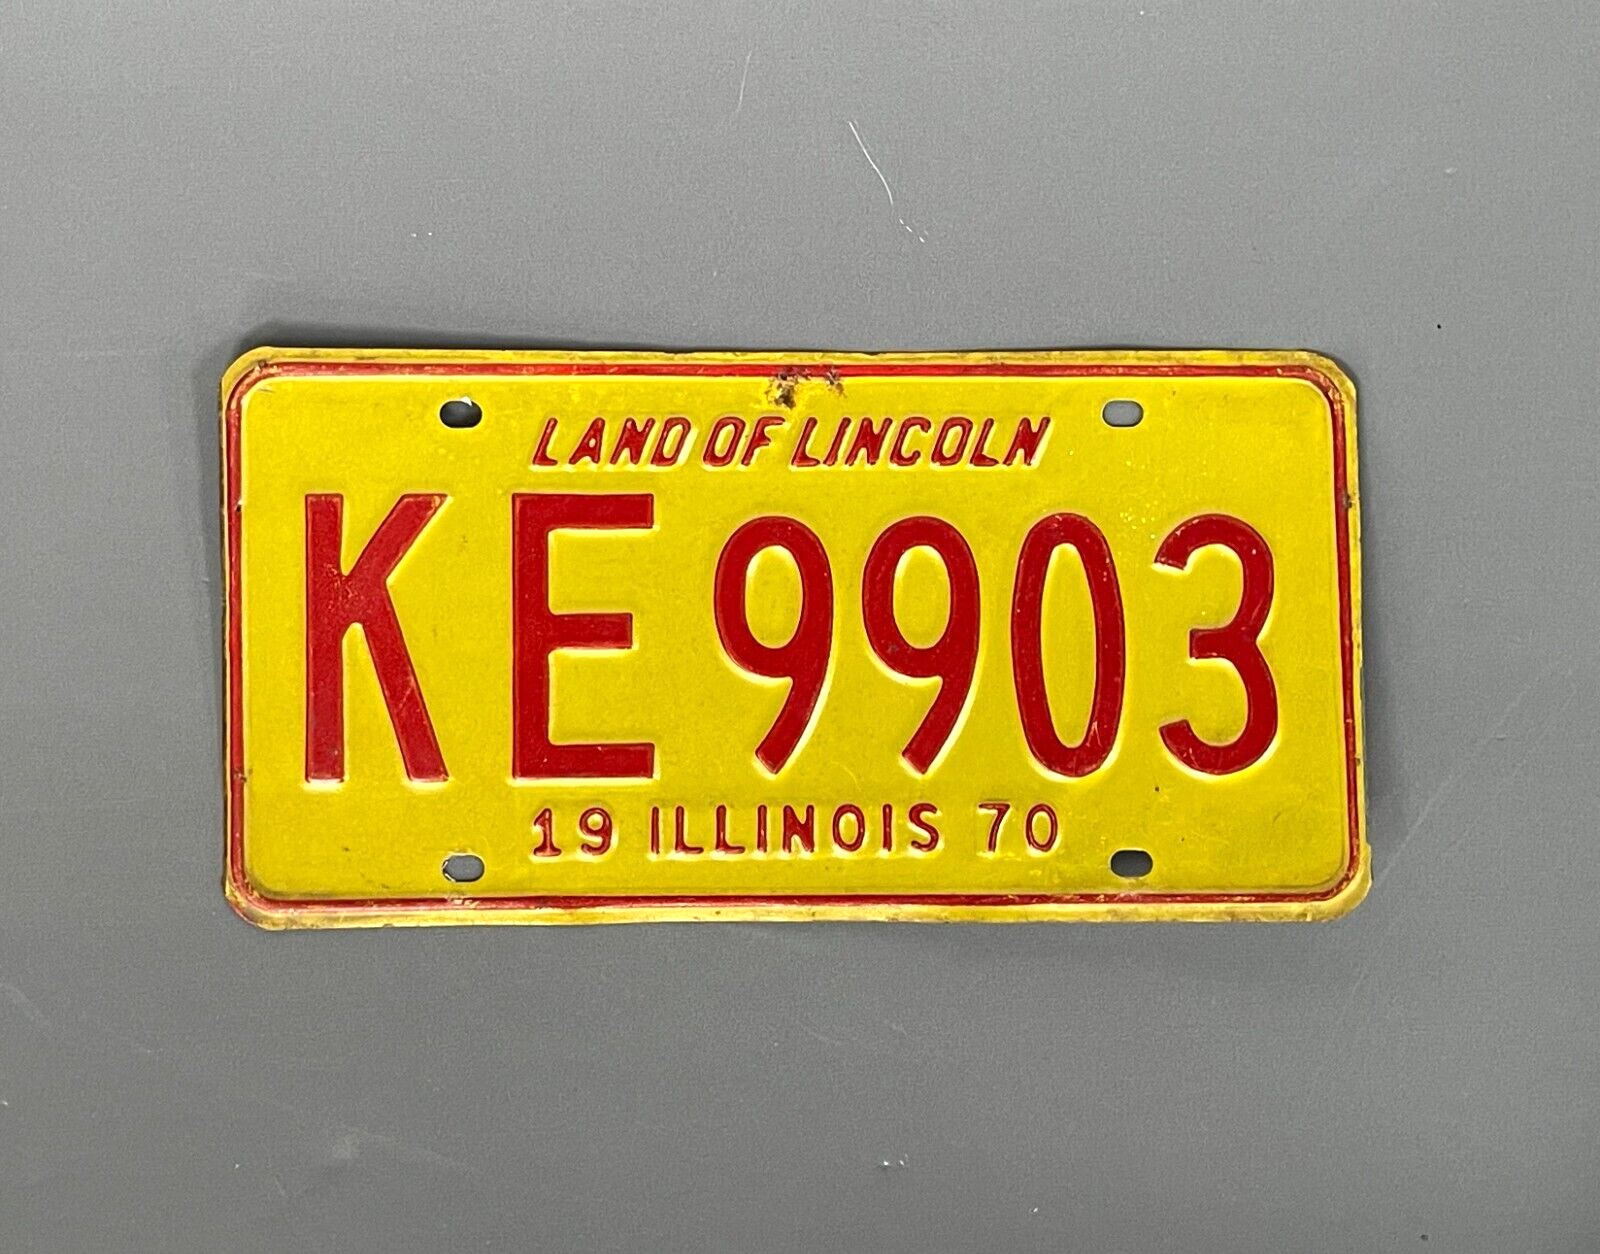 ILLINOIS 1970  -  (1) vintage license plate